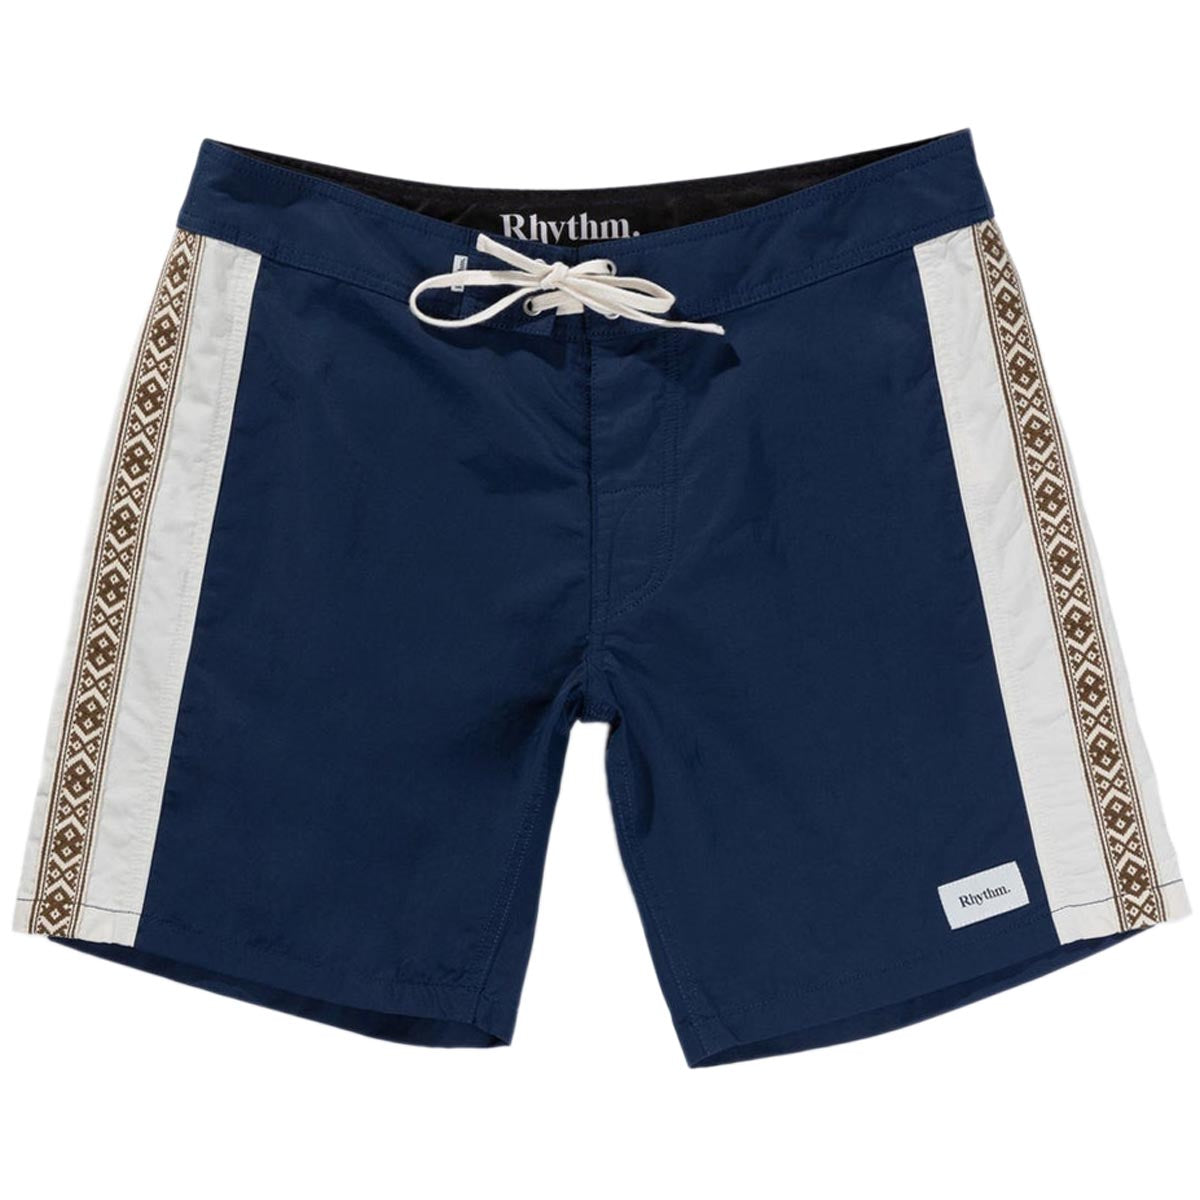 Rhythm Heritage Stripe Shorts - Navy image 1